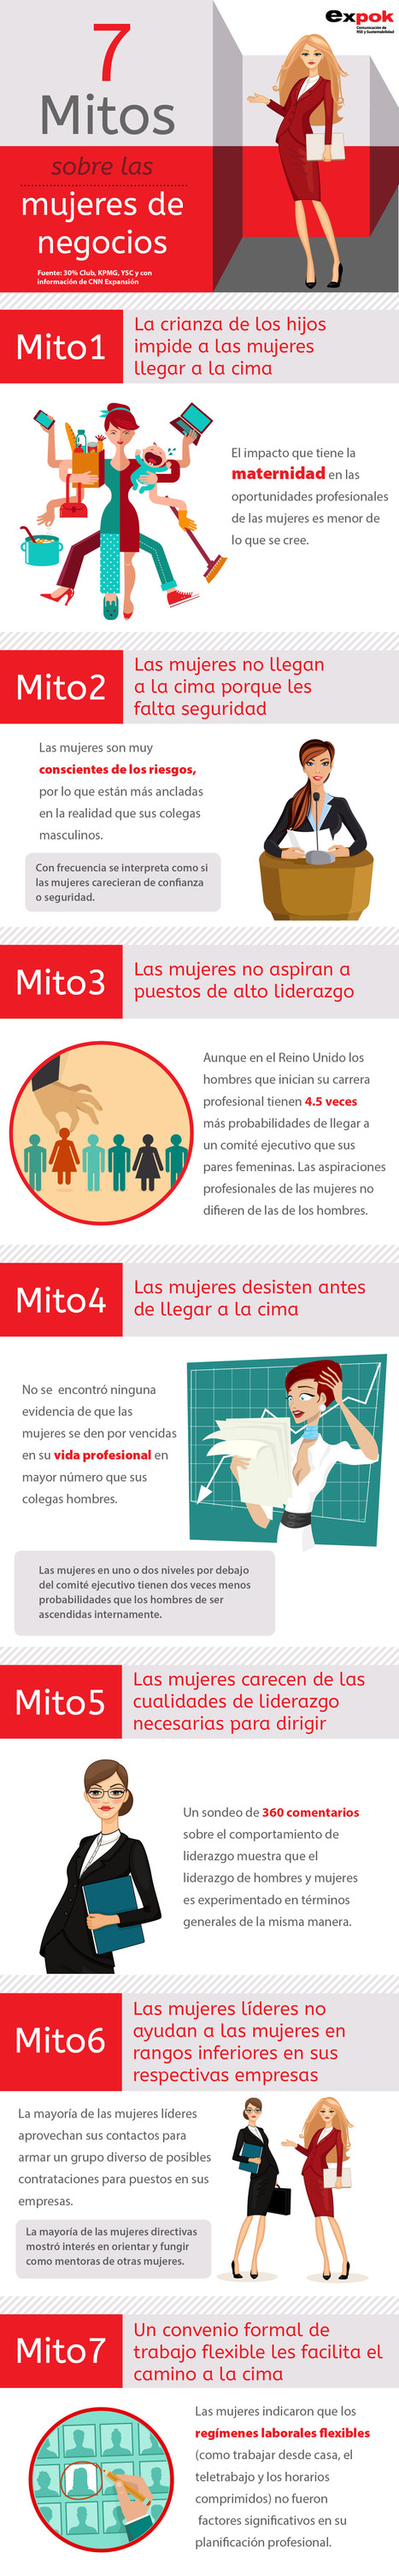 Mitos sobre las mujeres en los negocios #infografia #infographic | E-Learning-Inclusivo (Mashup) | Scoop.it